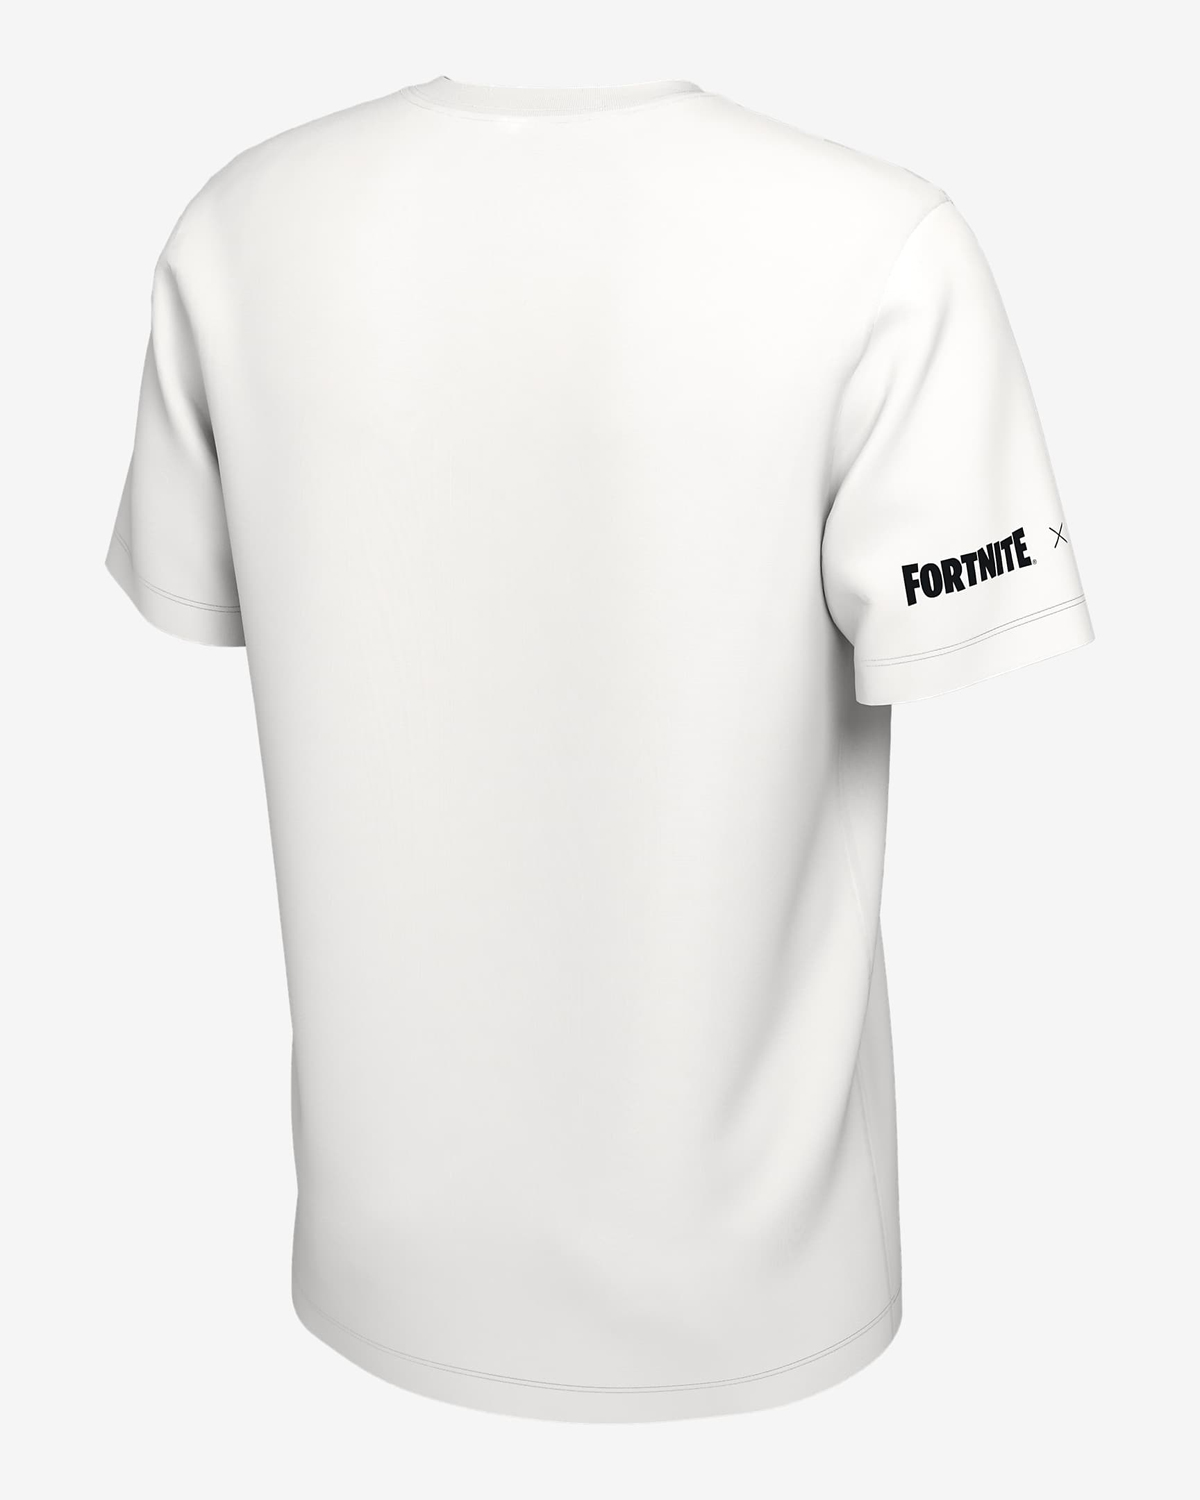 Nike-Fortnite-Airphoria-T-Shirt-White-3